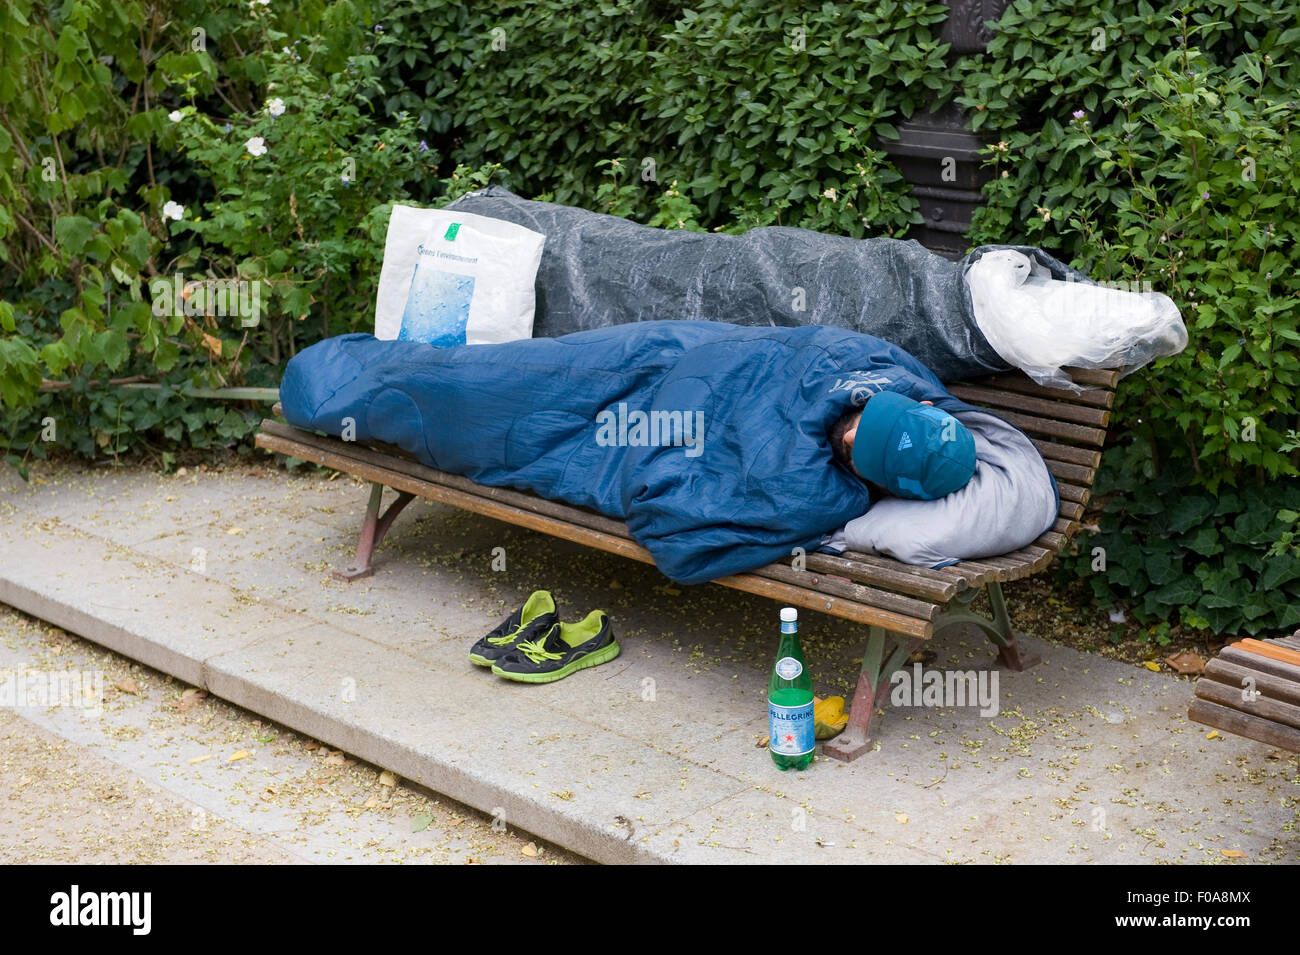 PARIS, Frankreich - 27. Juli 2015: Ein Obdachloser auf einer Bank in einem Park in Paris in Frankreich schläft Stockfoto